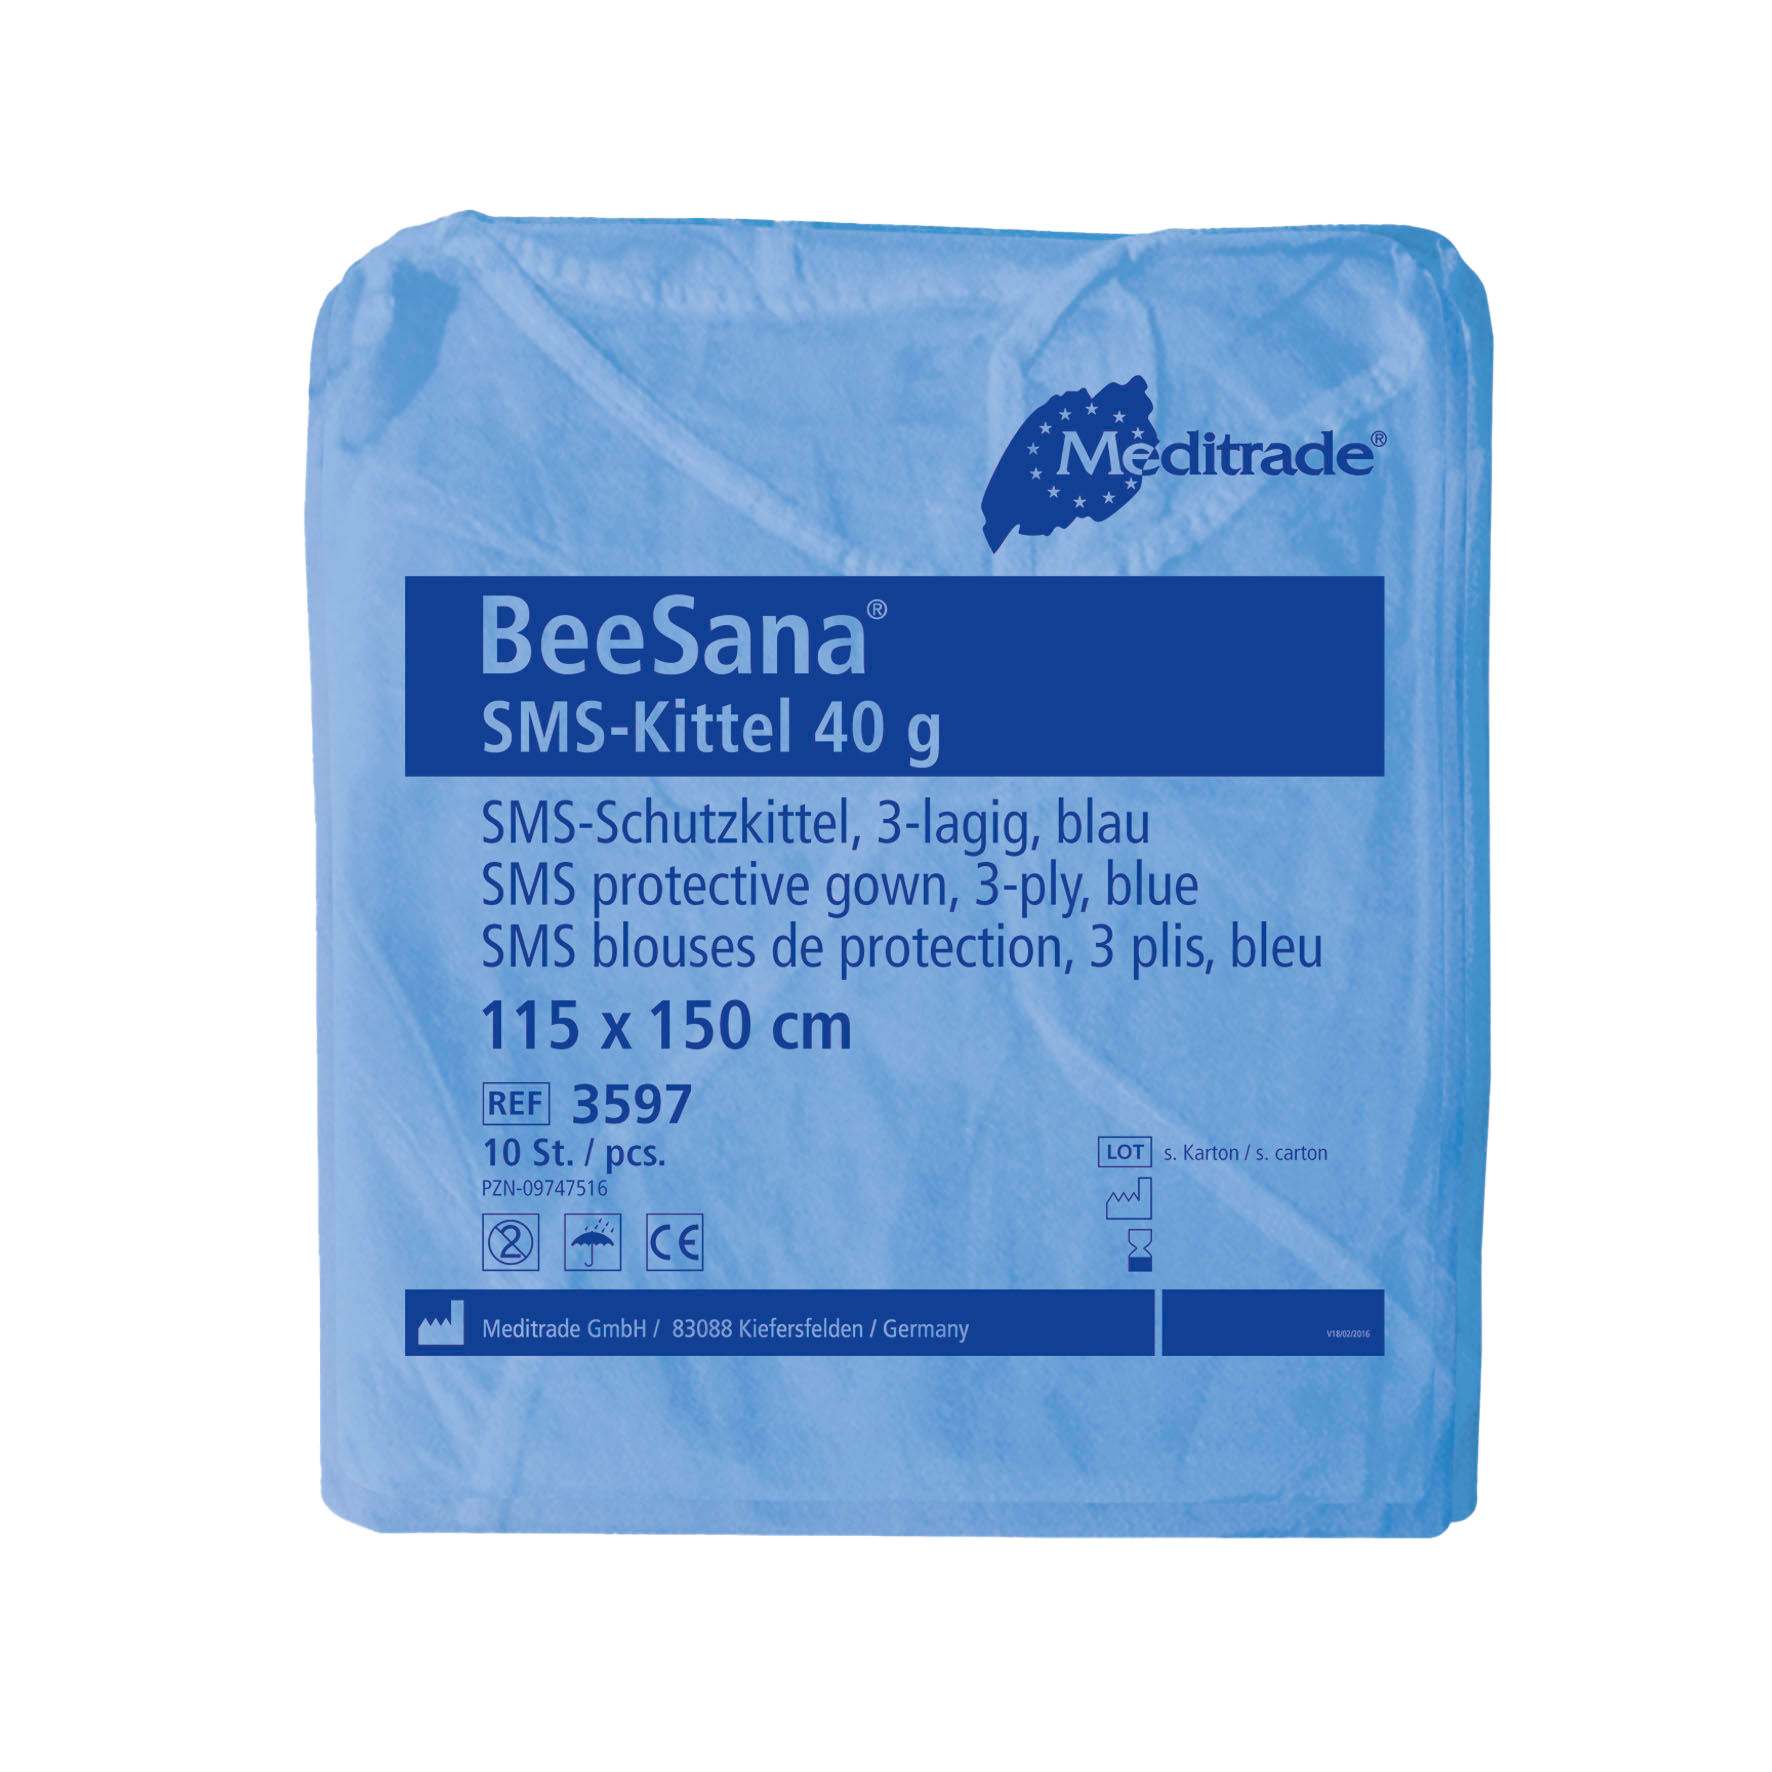 BeeSana SMS-Kittel 40g 115x150cm blau, 10 Stk.